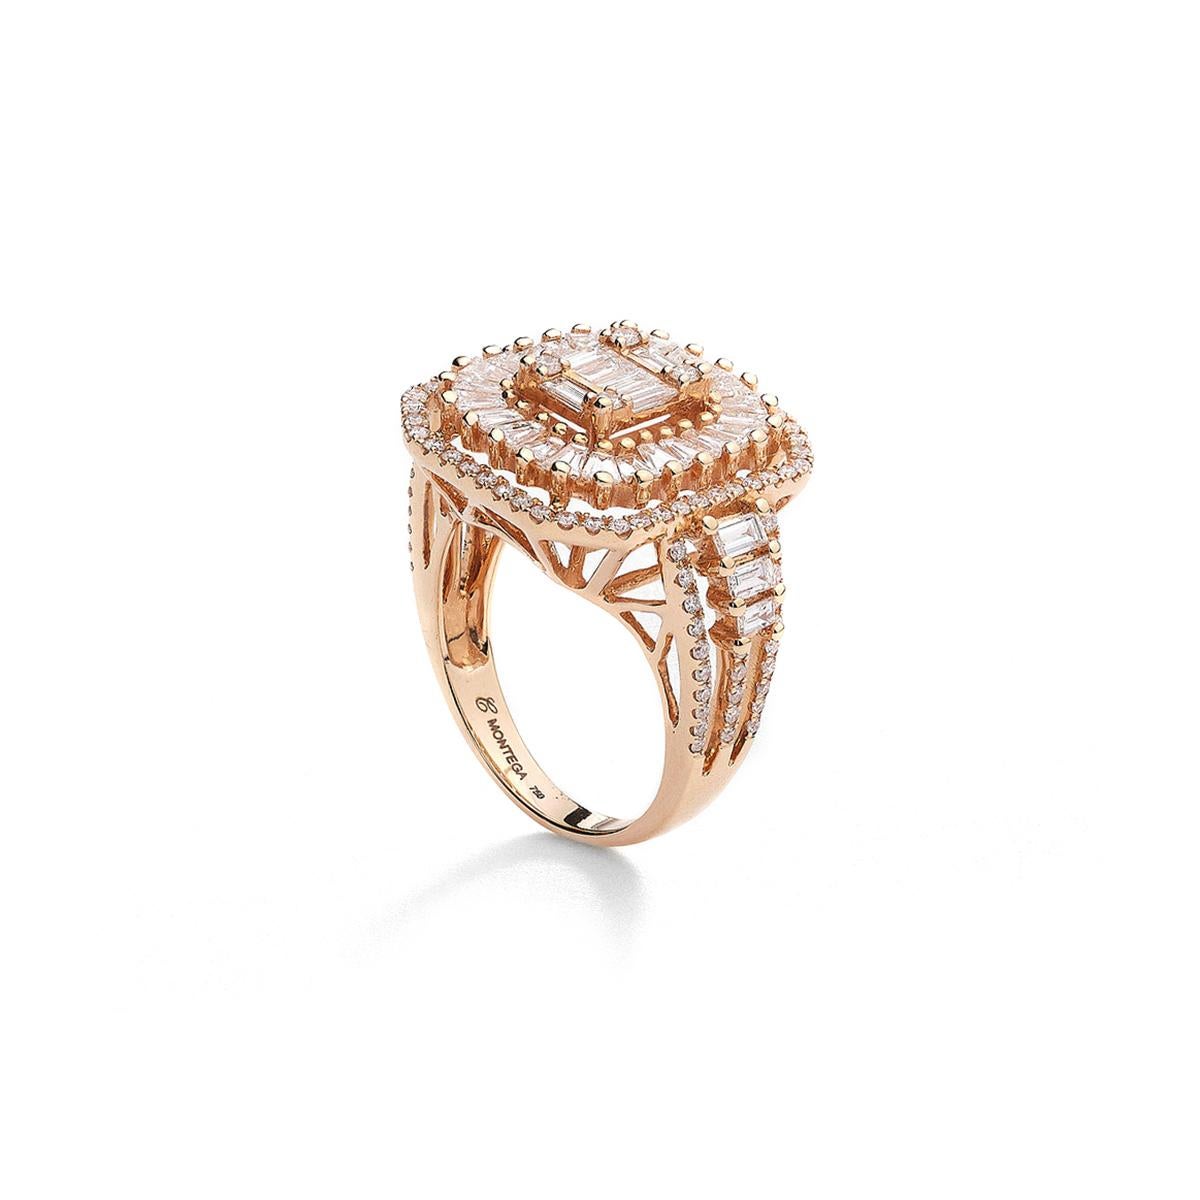 Tauchen Sie ein in die atemberaubende Schönheit unseres exquisiten Rings aus 18kt Roségold. Dieses wahrhaft fesselnde Stück ist ein atemberaubendes Beispiel für Eleganz und Raffinesse, das einen bleibenden Eindruck hinterlassen wird.

Dieser mit